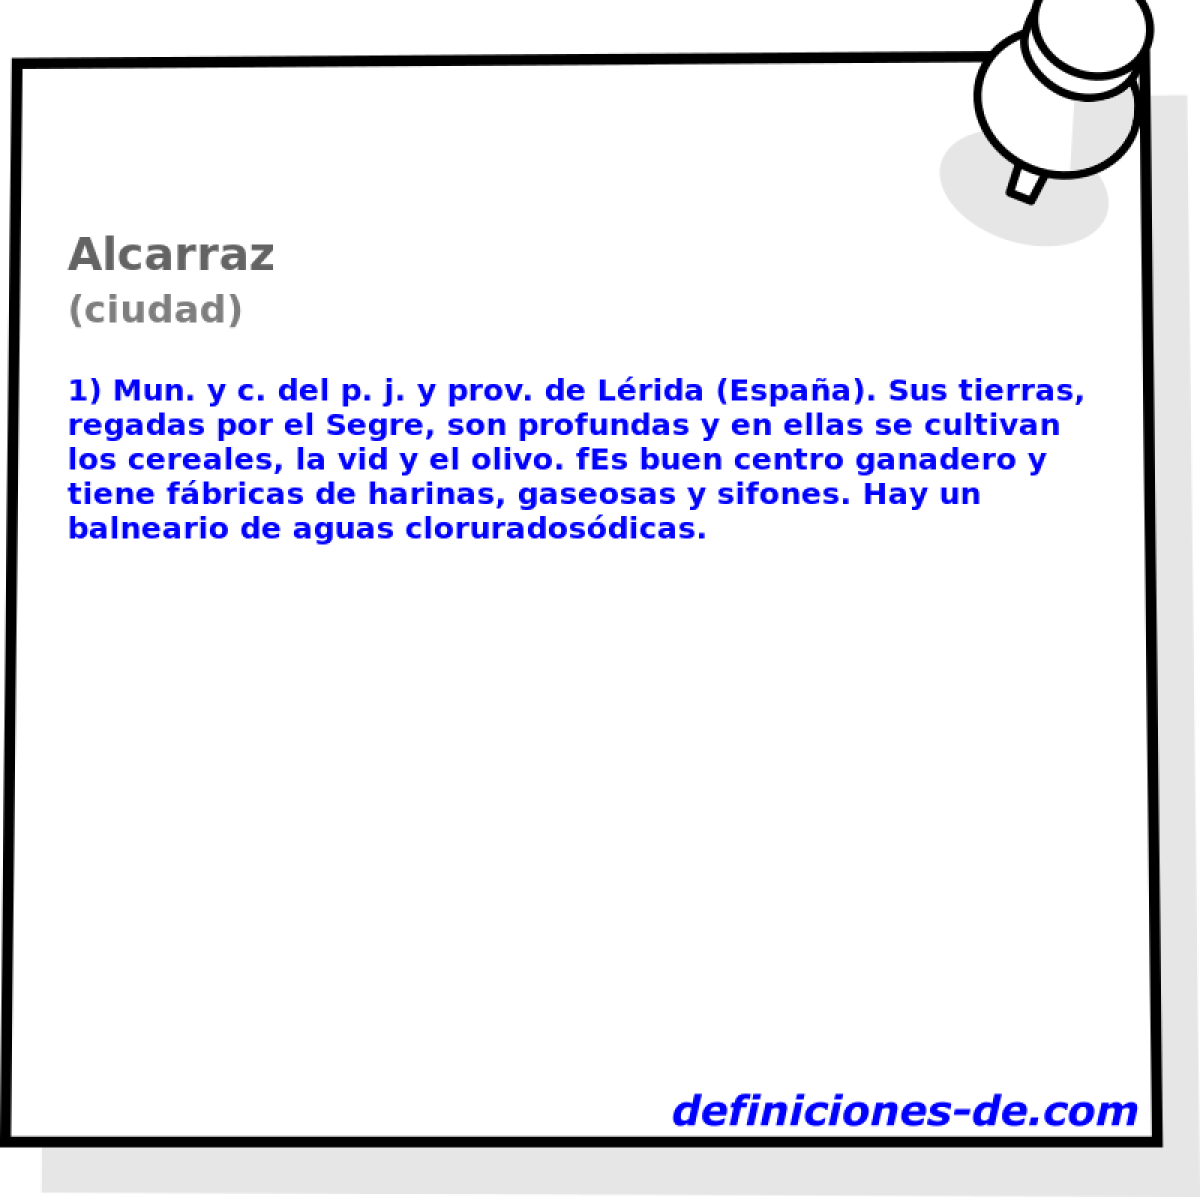 Alcarraz (ciudad)